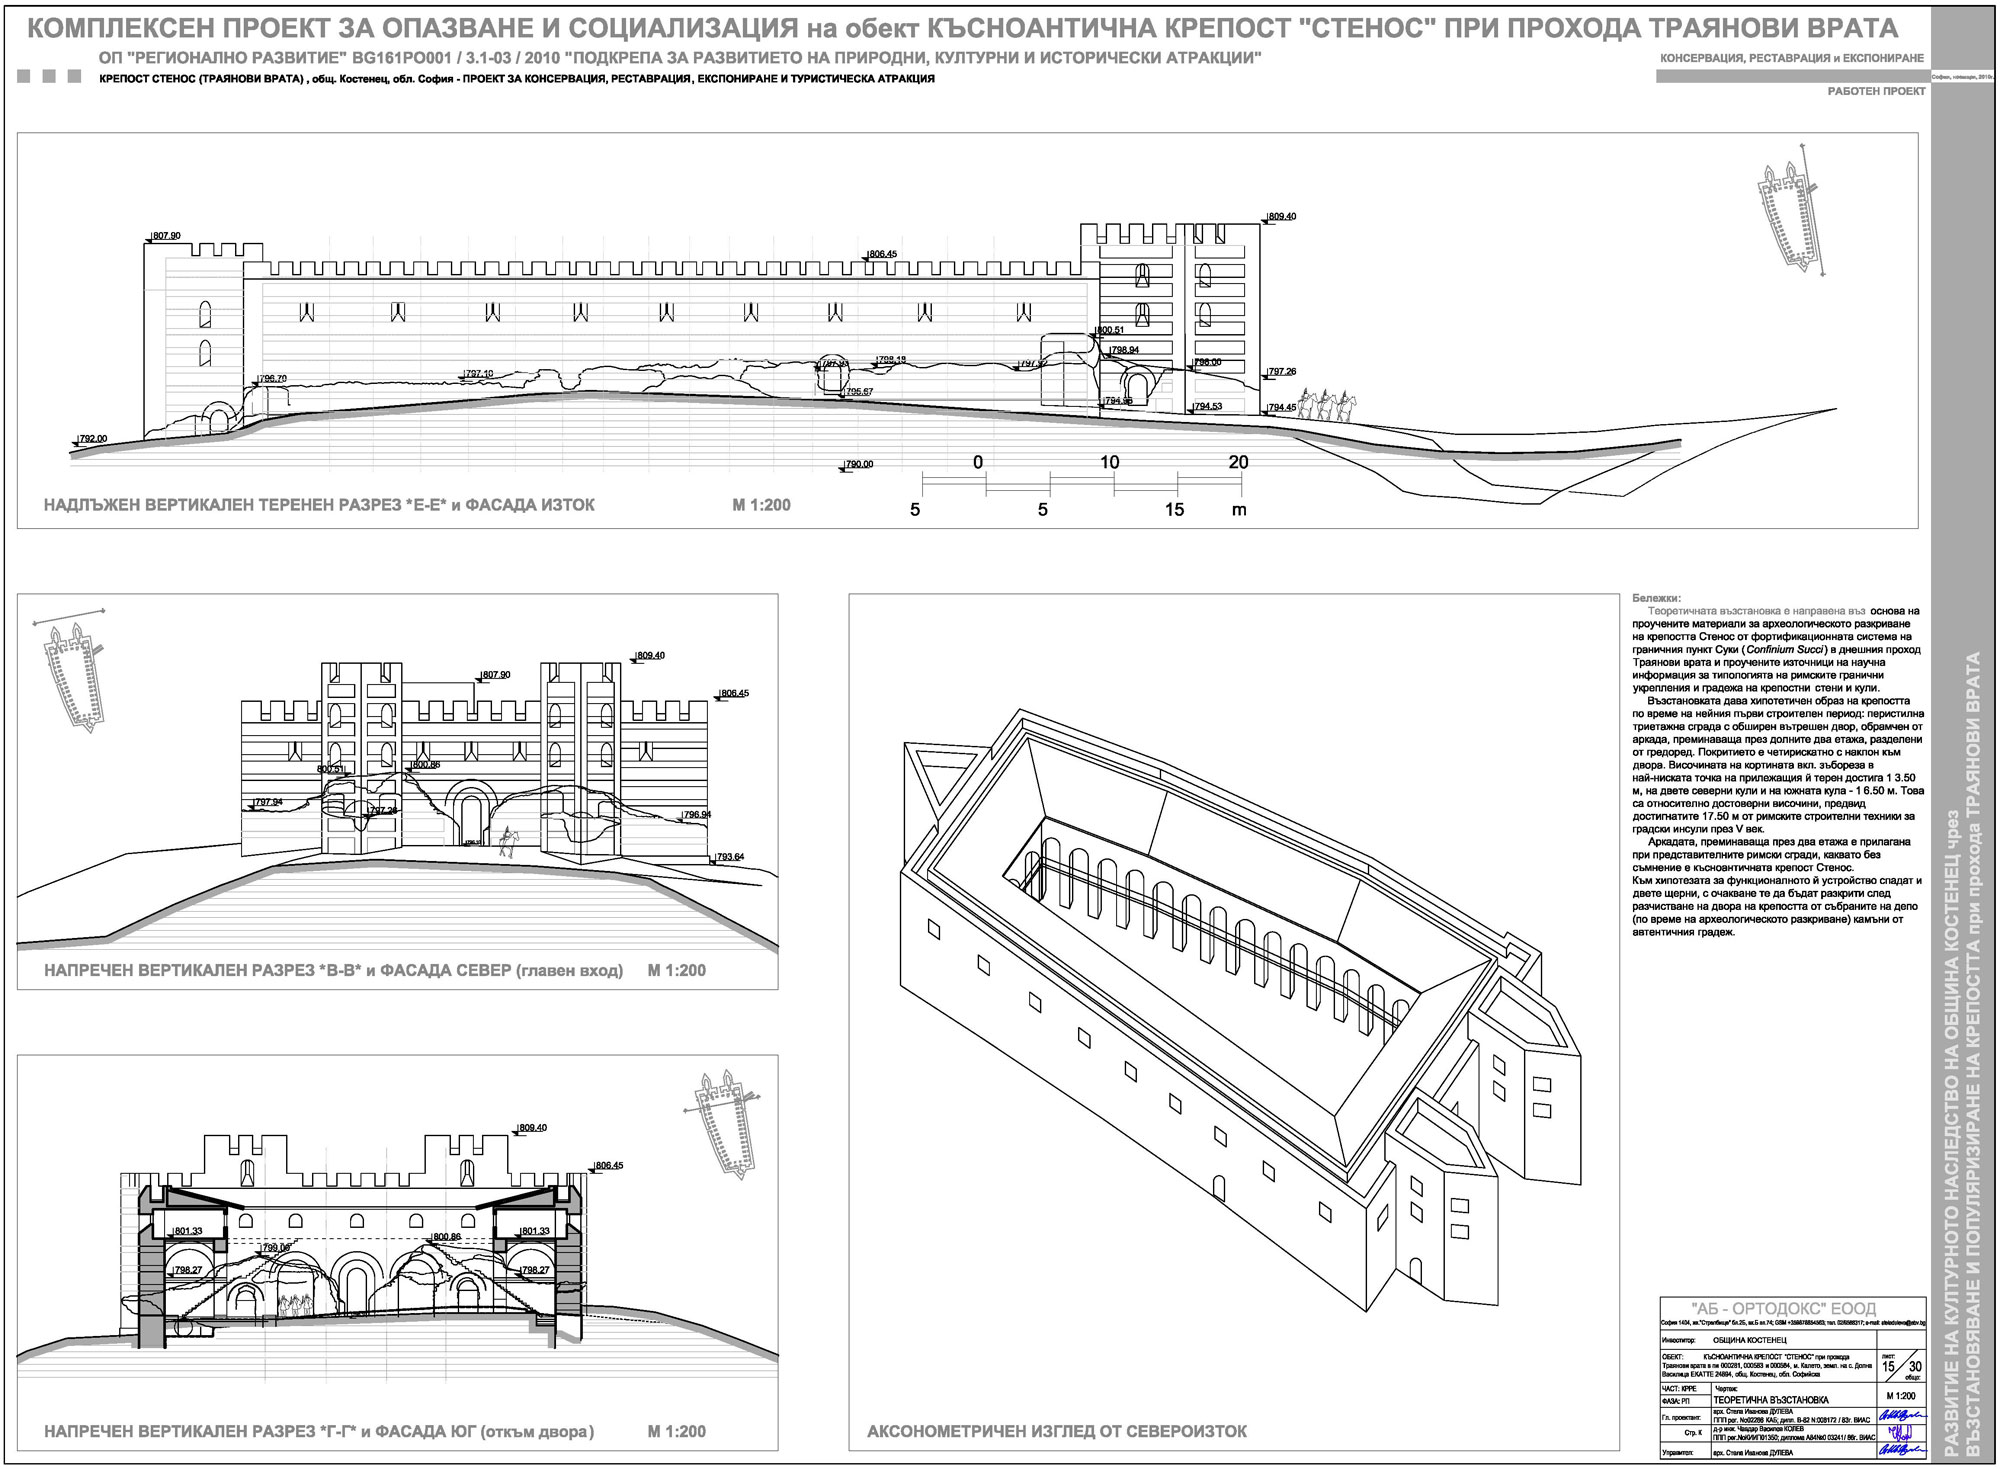 Приложение 2: Комплексен проект за опазване и социализация на обект Късноантична крепост "Стенос" при прохода Траянови врата